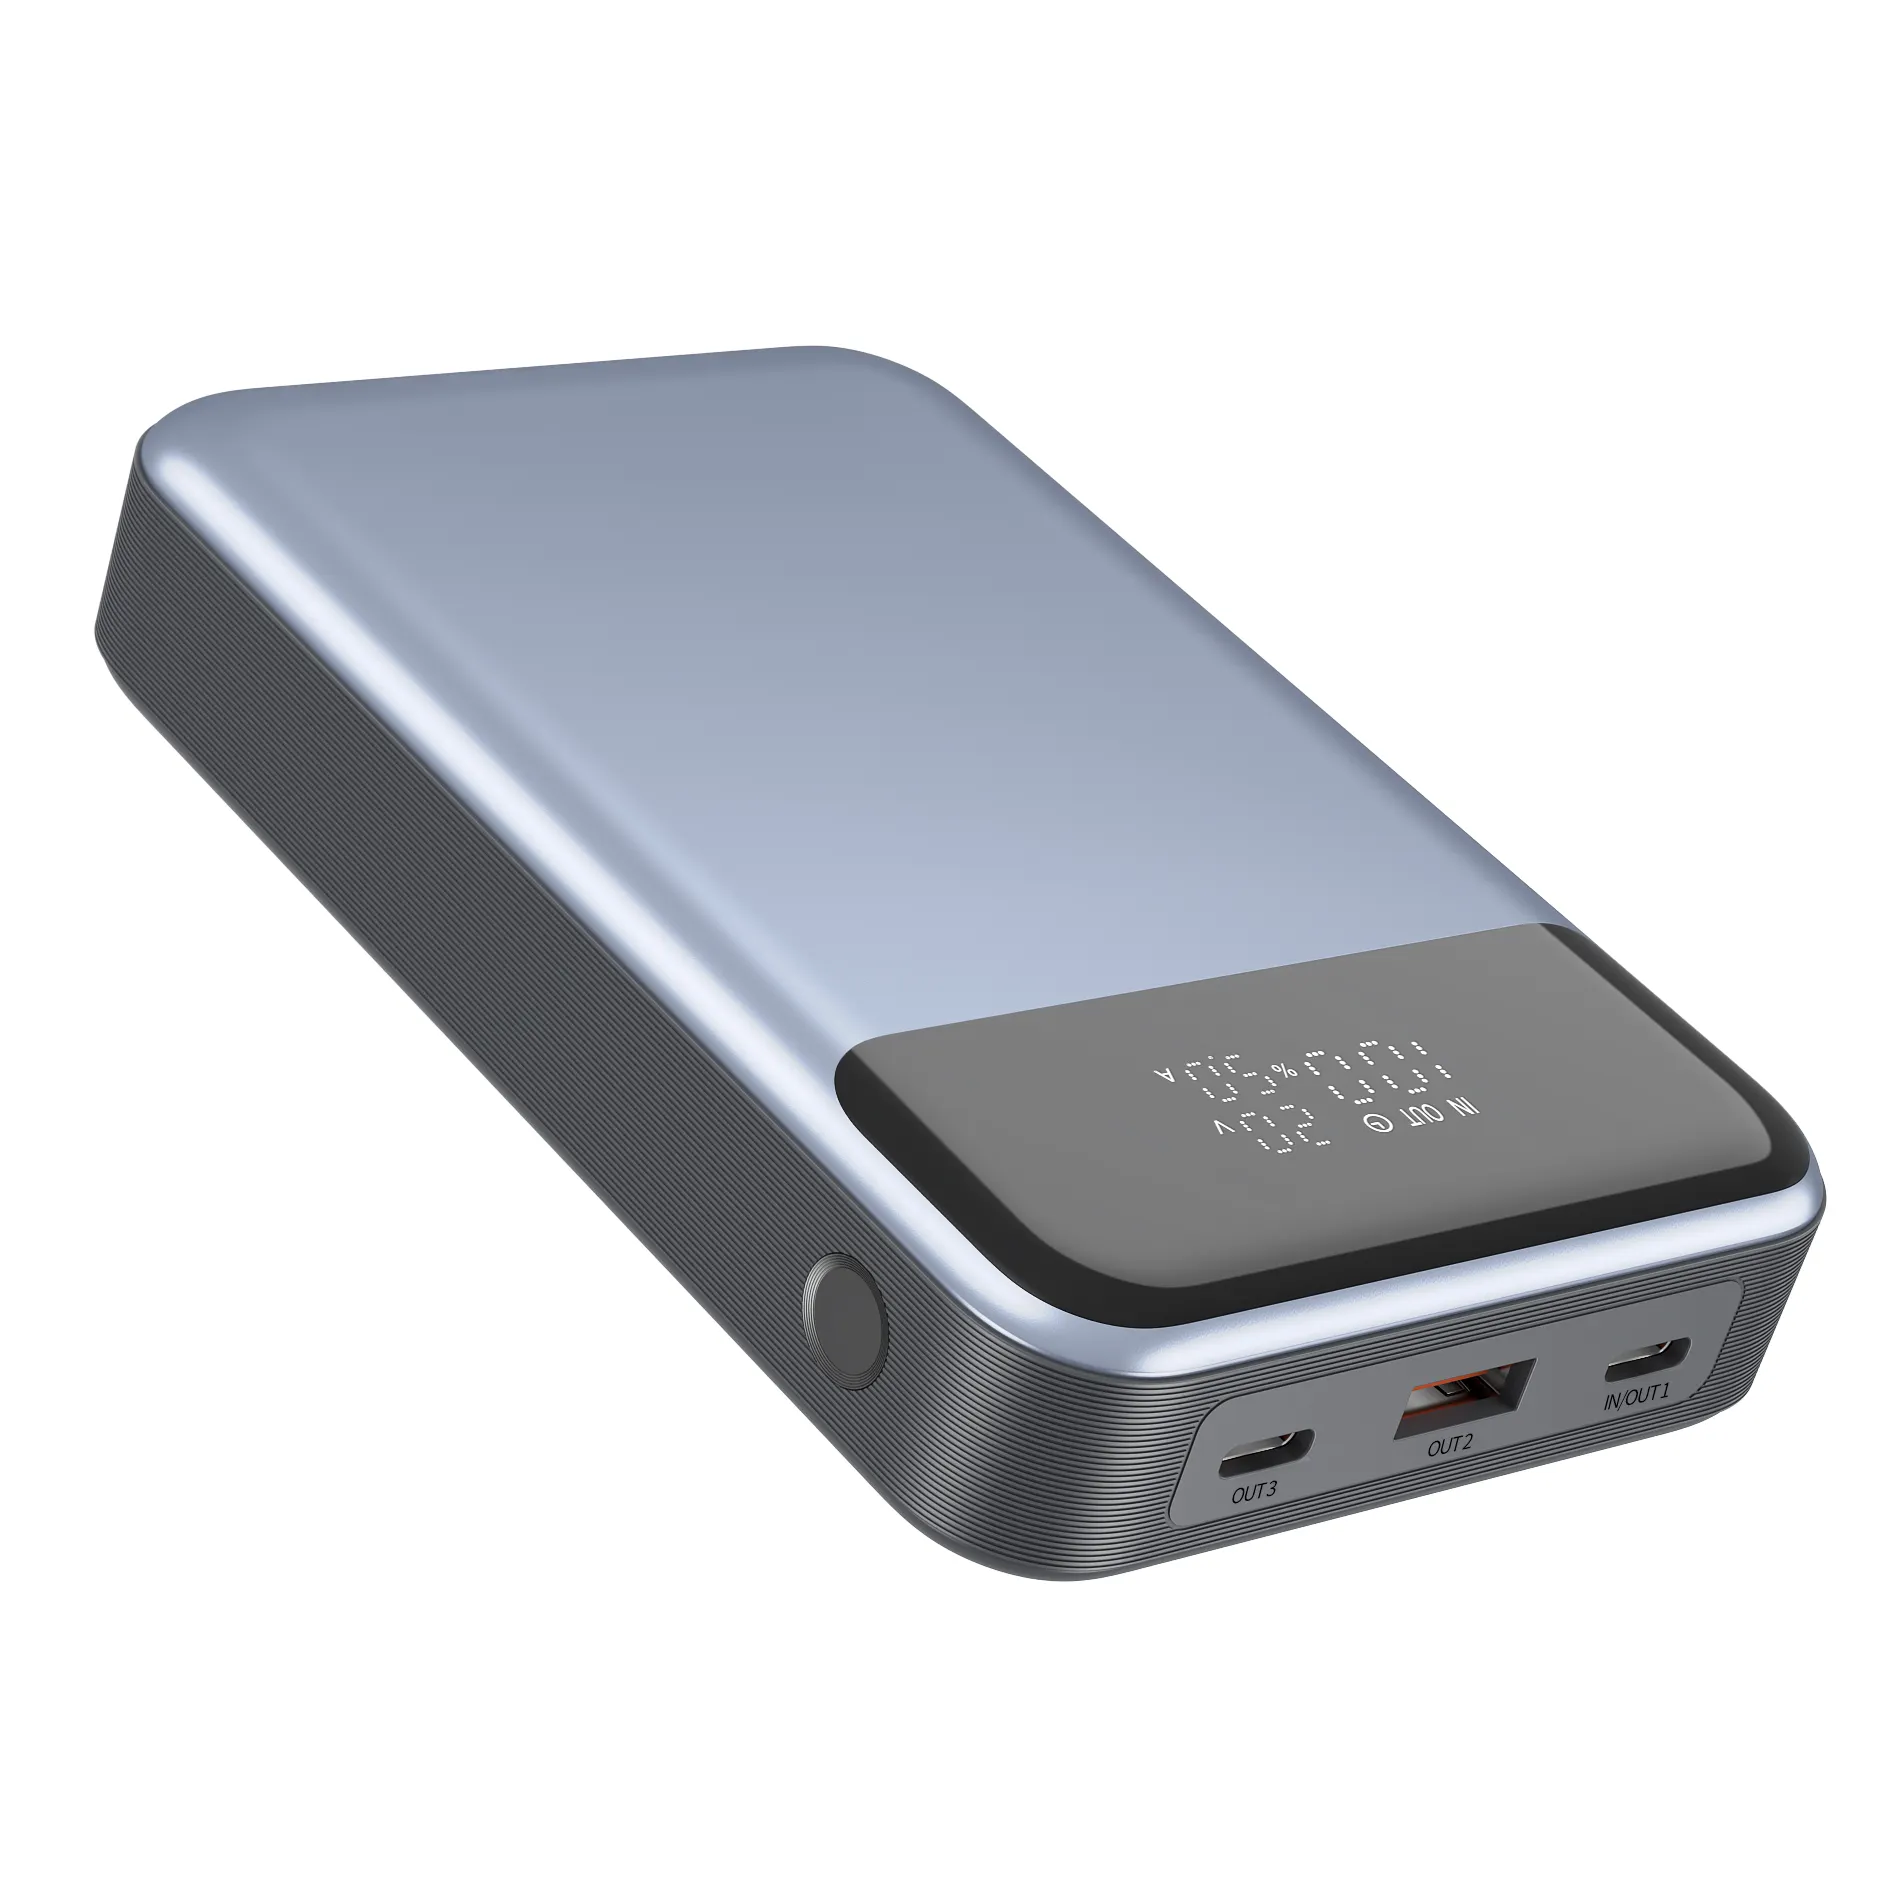 Hoya Oem PD280W 2000 мАч телефон ноутбук 20000 карманный мобильный мини портативный блок питания зарядное устройство